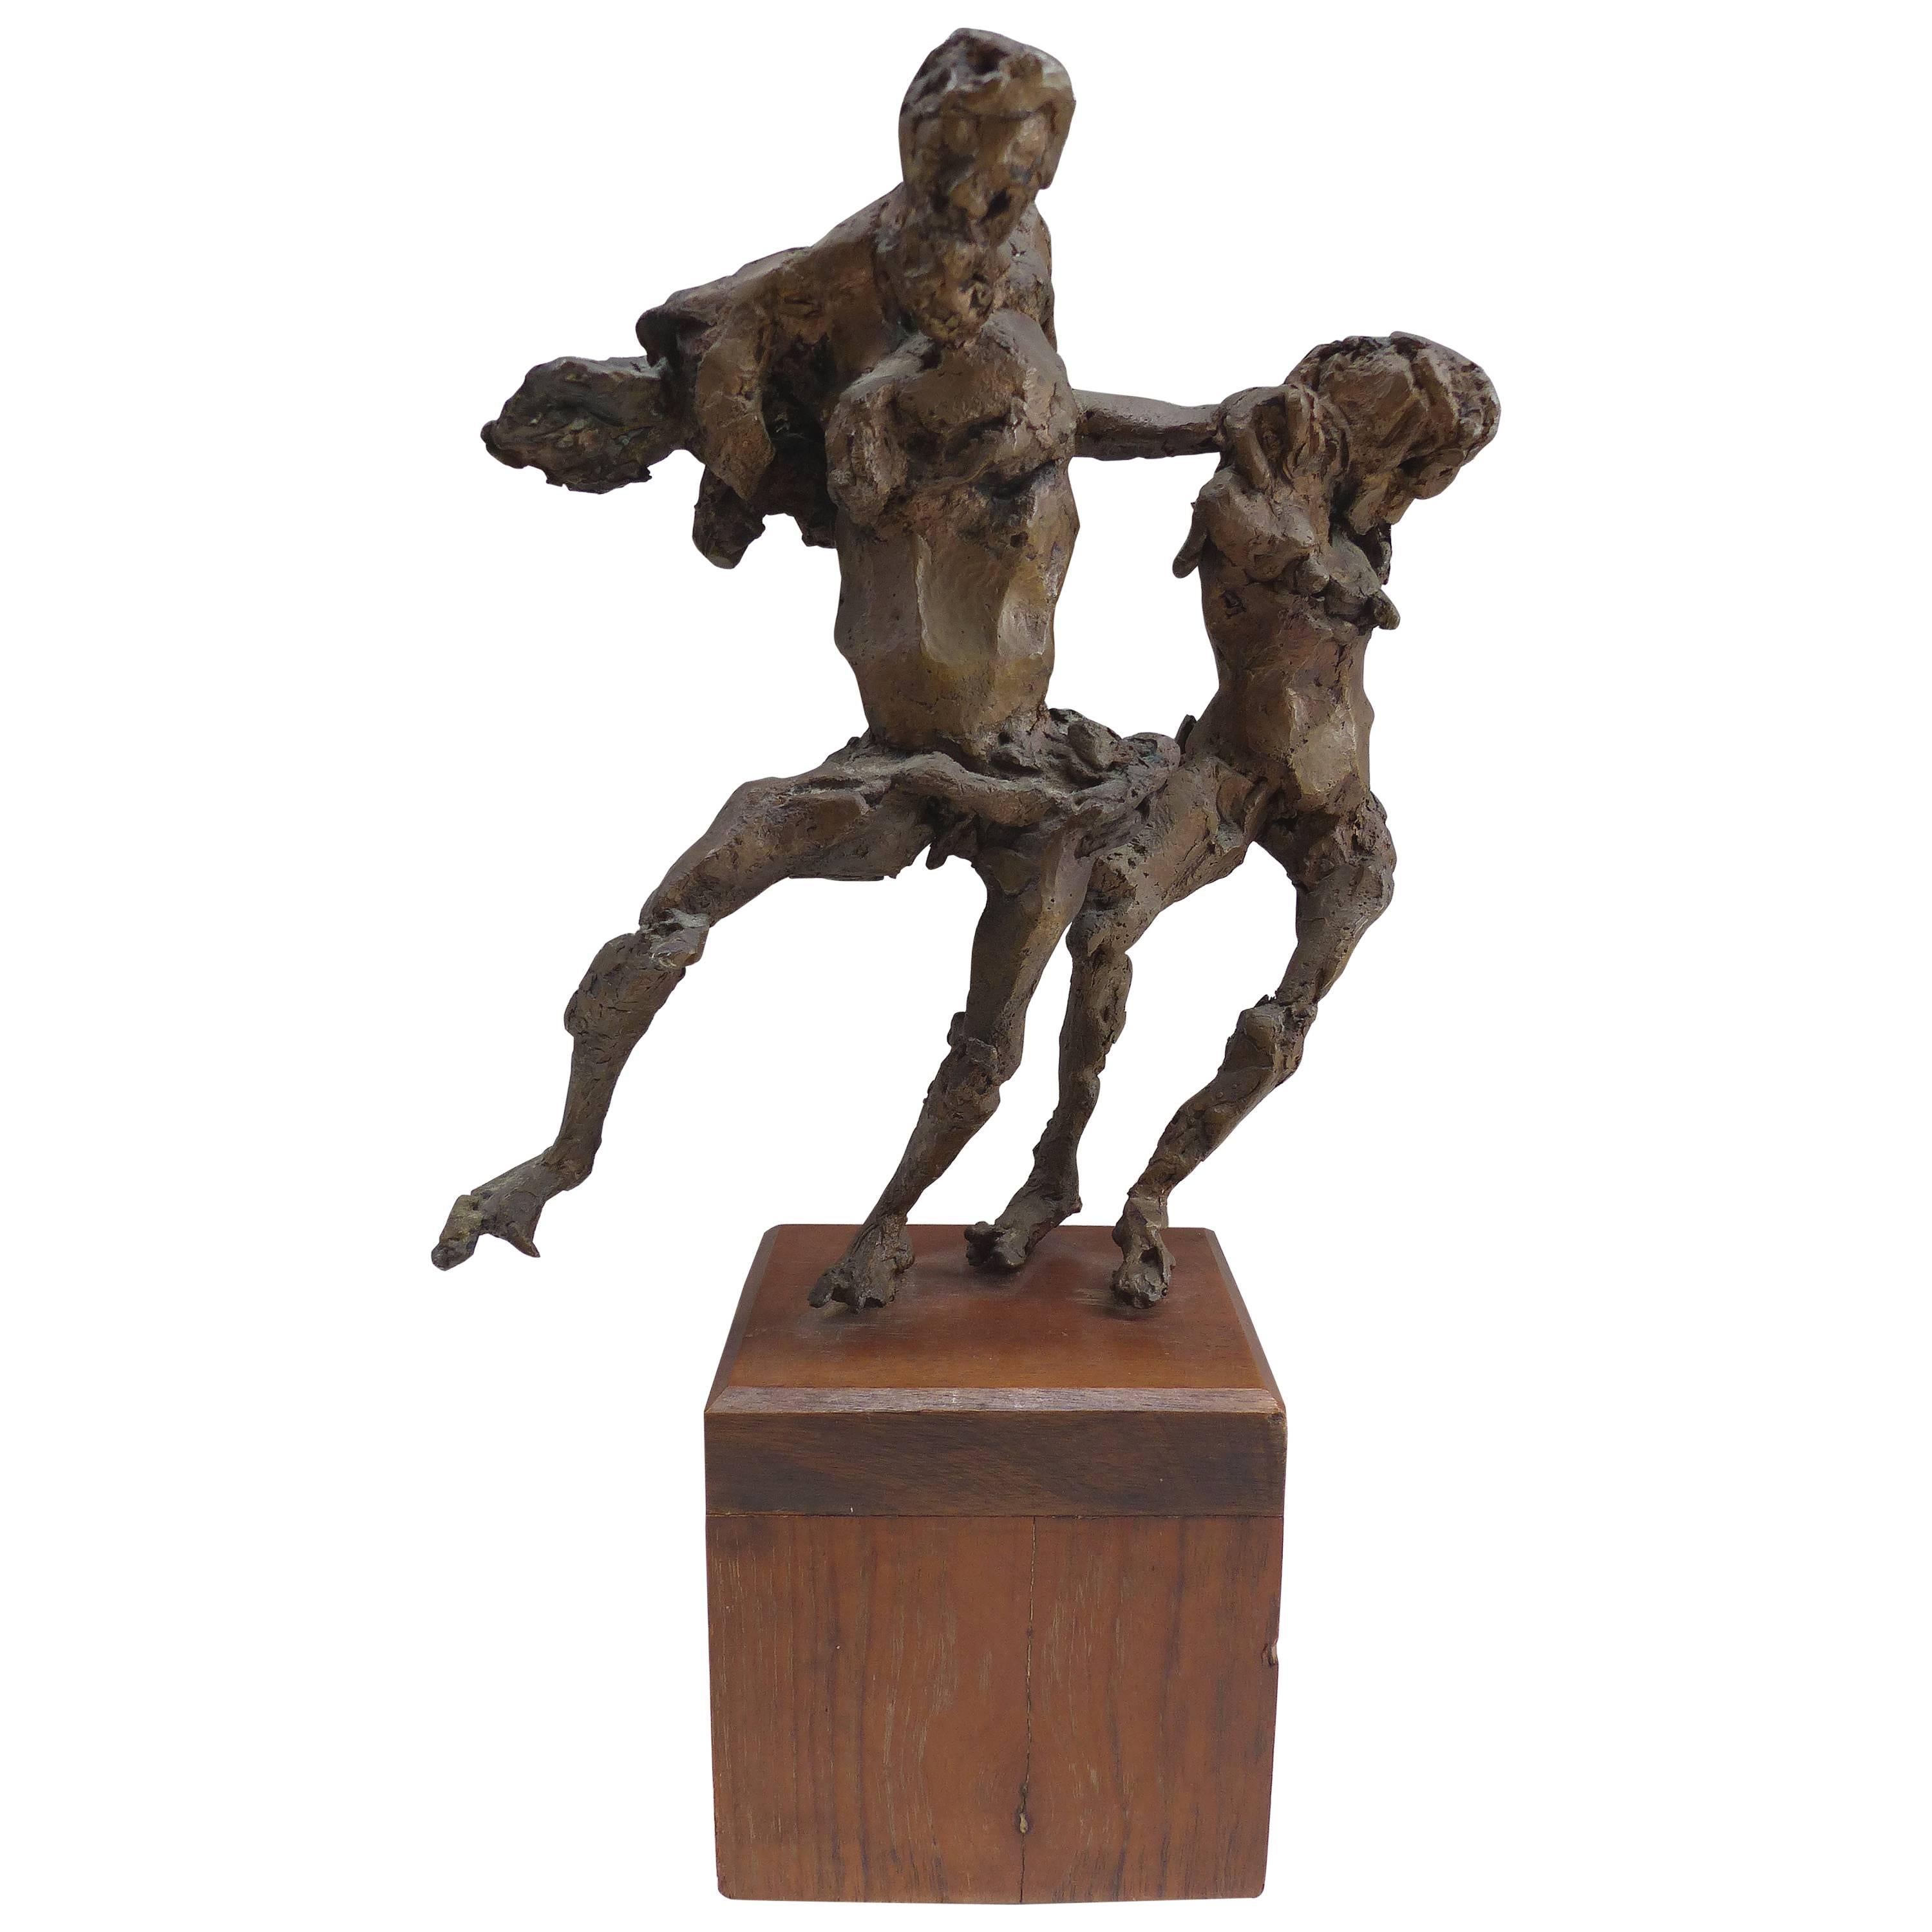 Linda Goodman Brutalistische figurative Bronzeskulptur